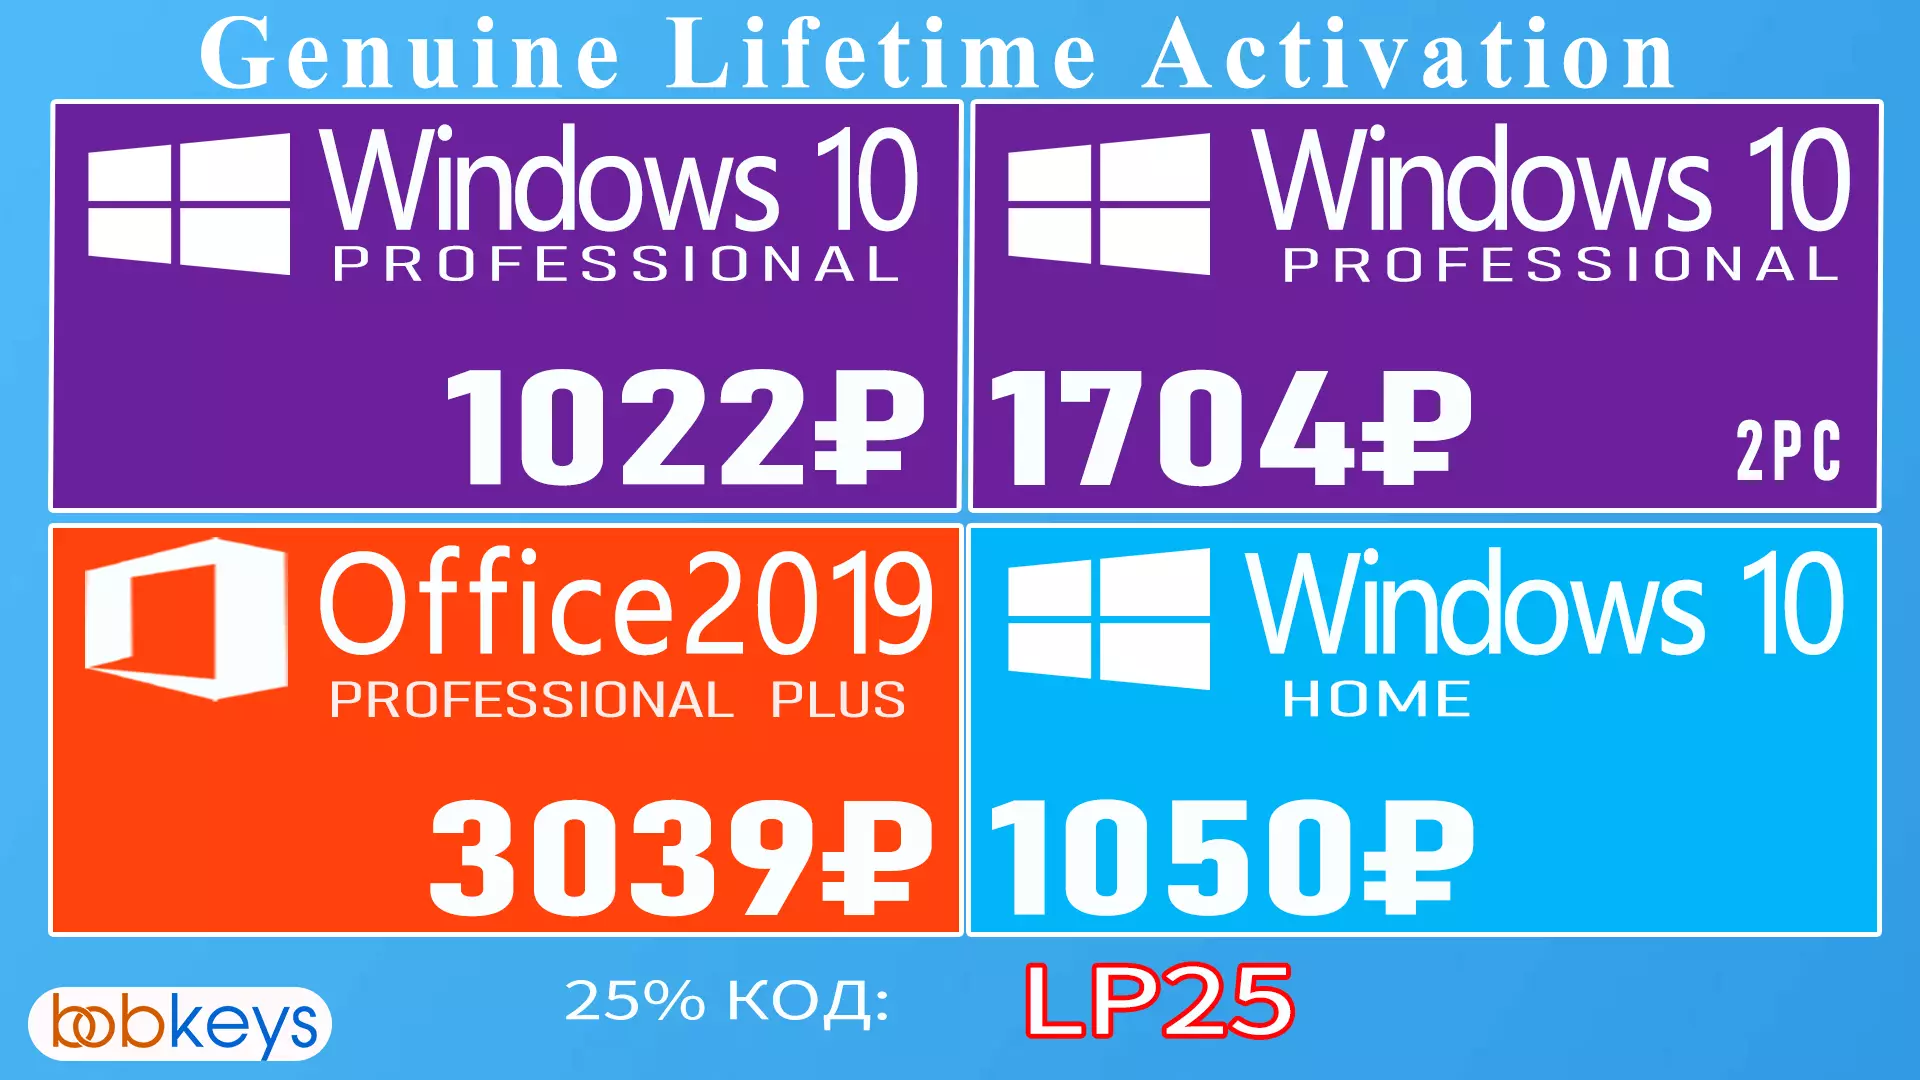 Kif tikseb liċenzja liċenzjata tal-Windows 10 bi skont tajjeb 1812_1